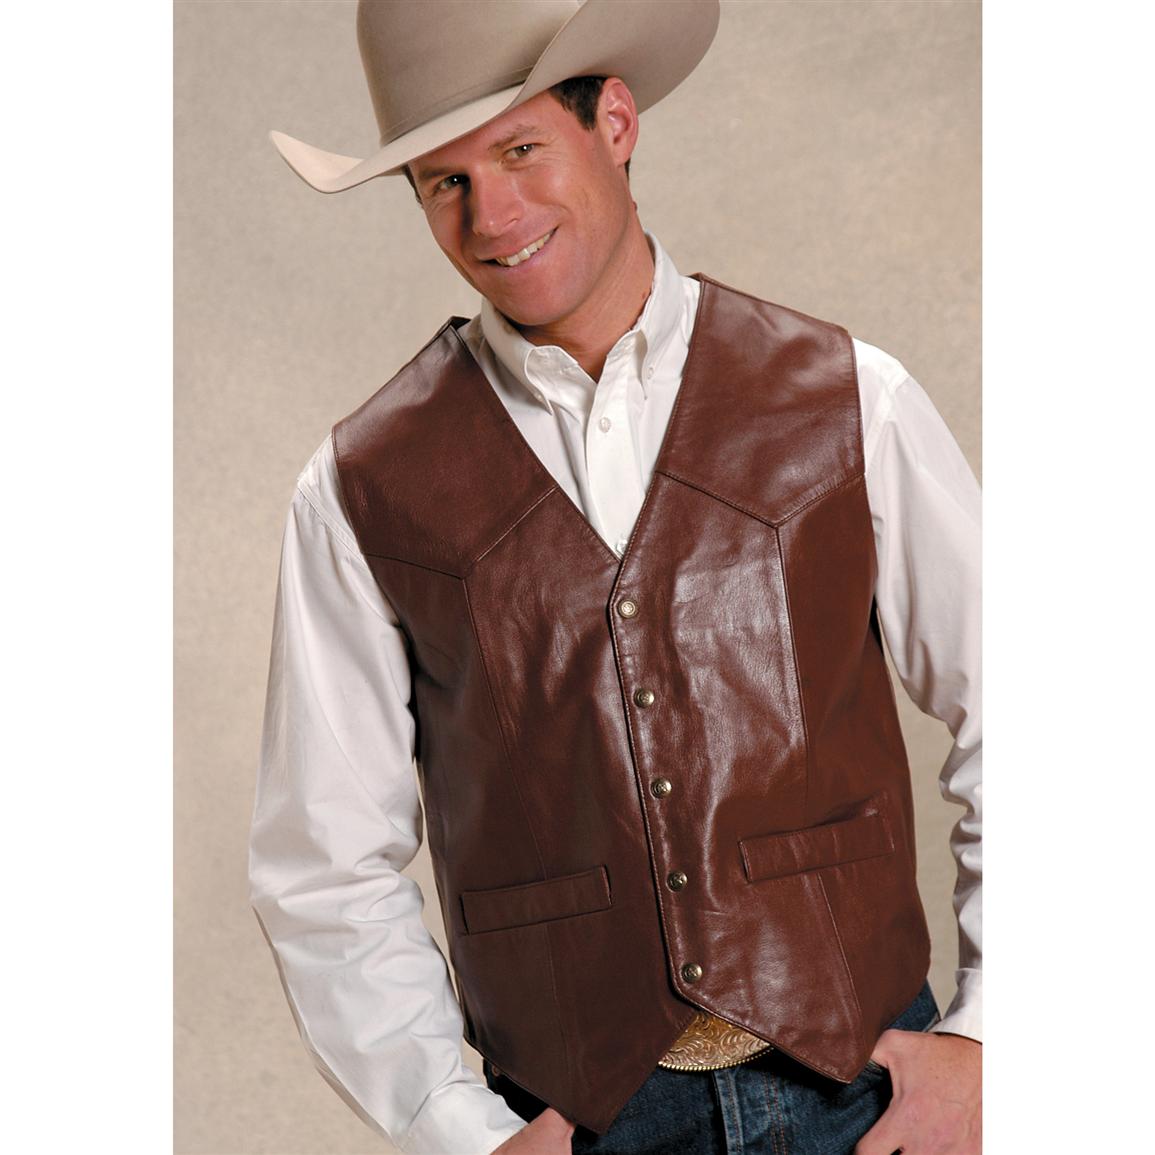 Roper® Saguaro West Goat Nappa Leather Vest - 127628, Vests at ...